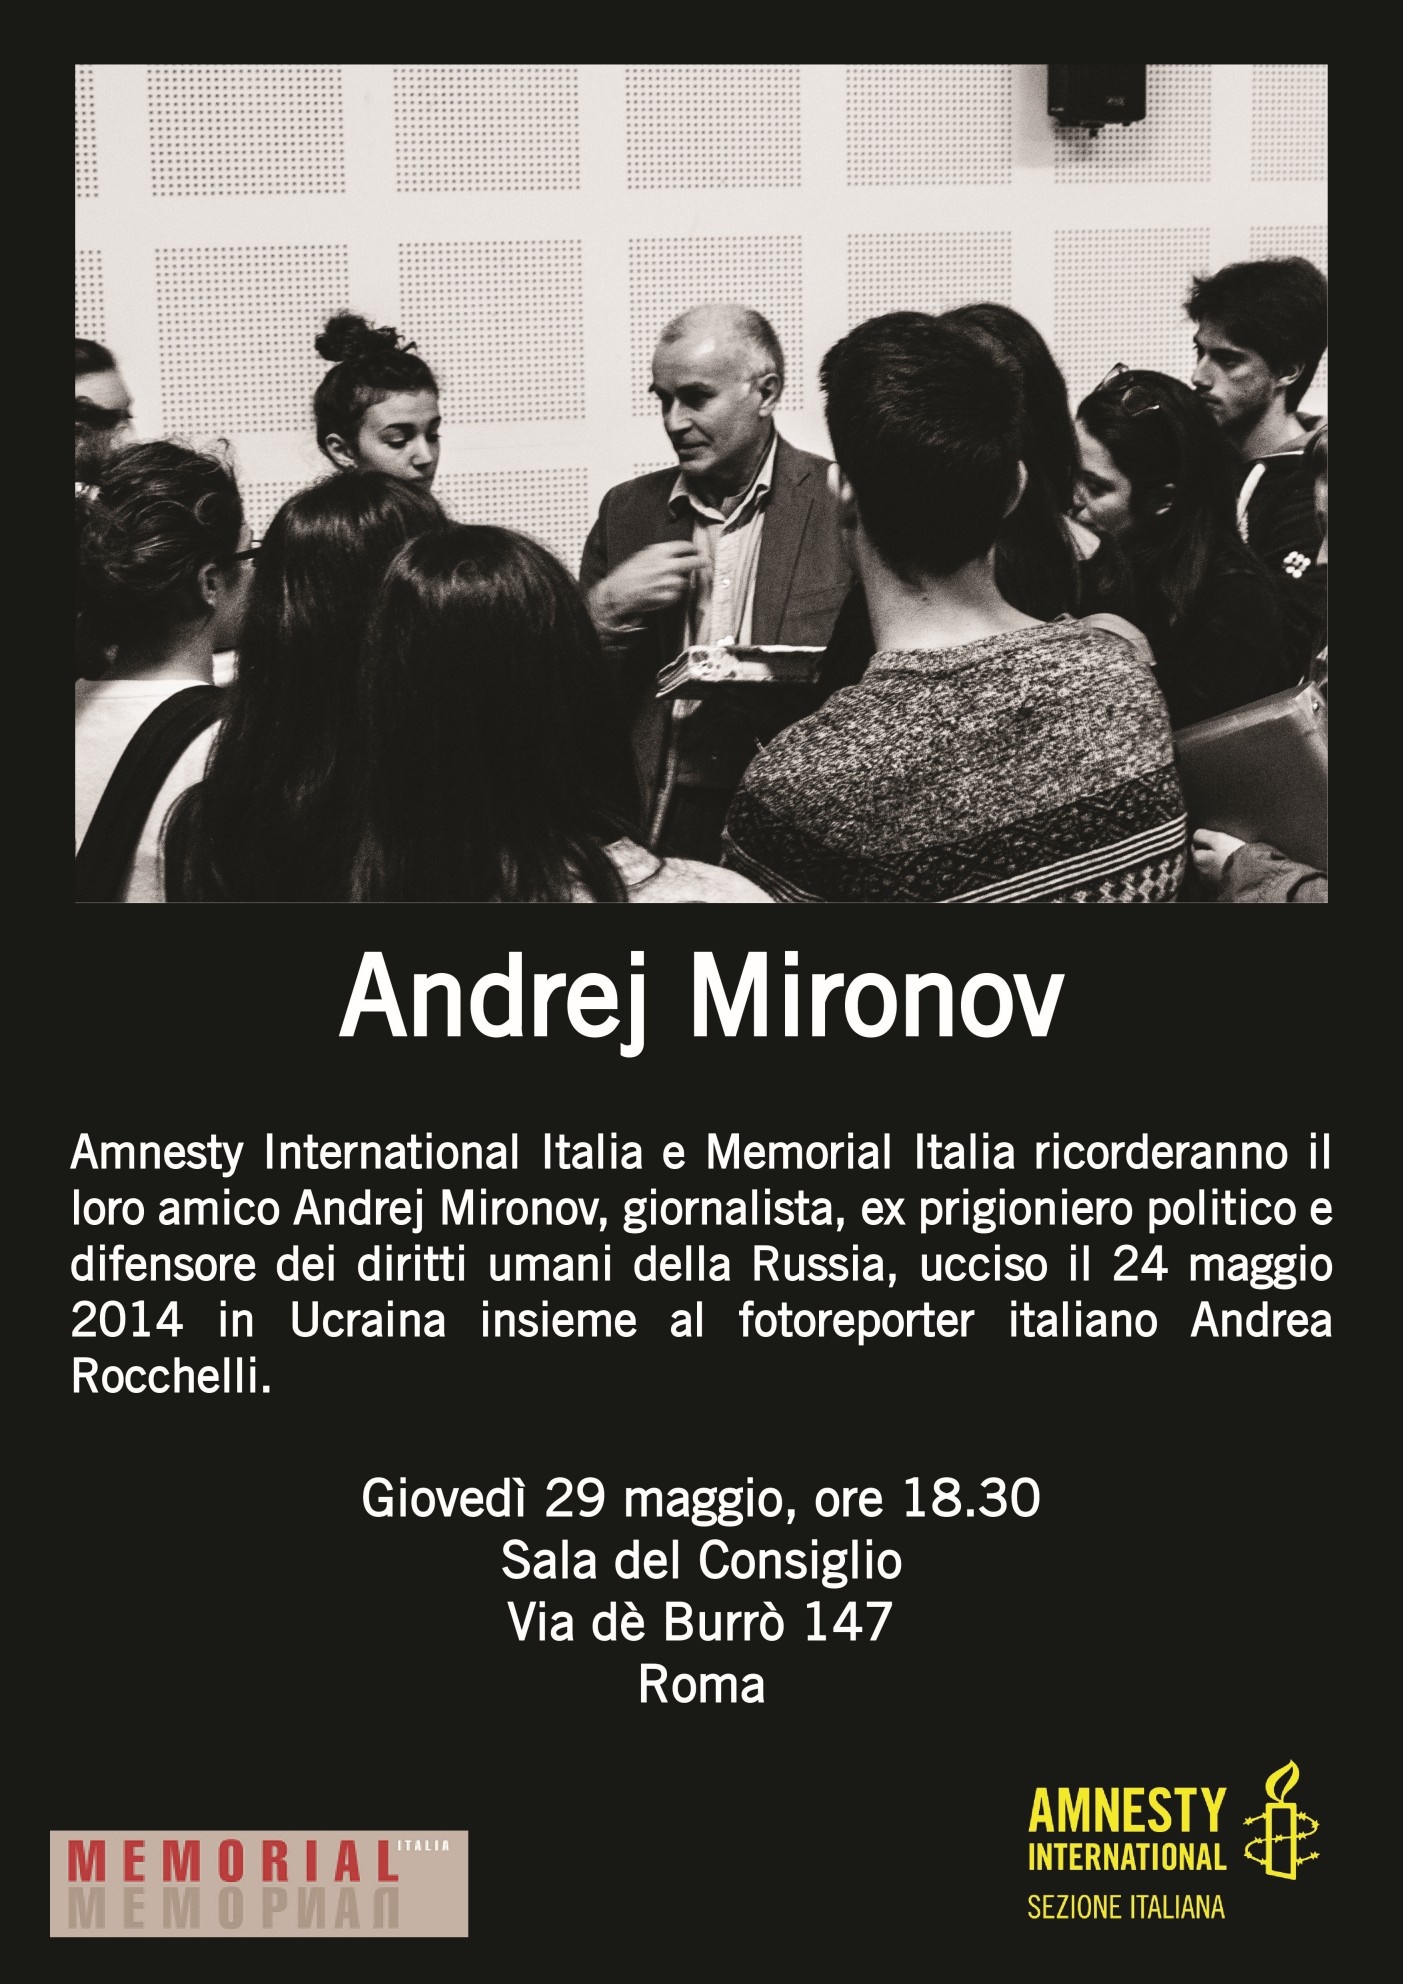 Amnesty International Italia e Memorial Italia ricordano il loro amico Andrej Mironov. Giovedì 29 maggio a Roma